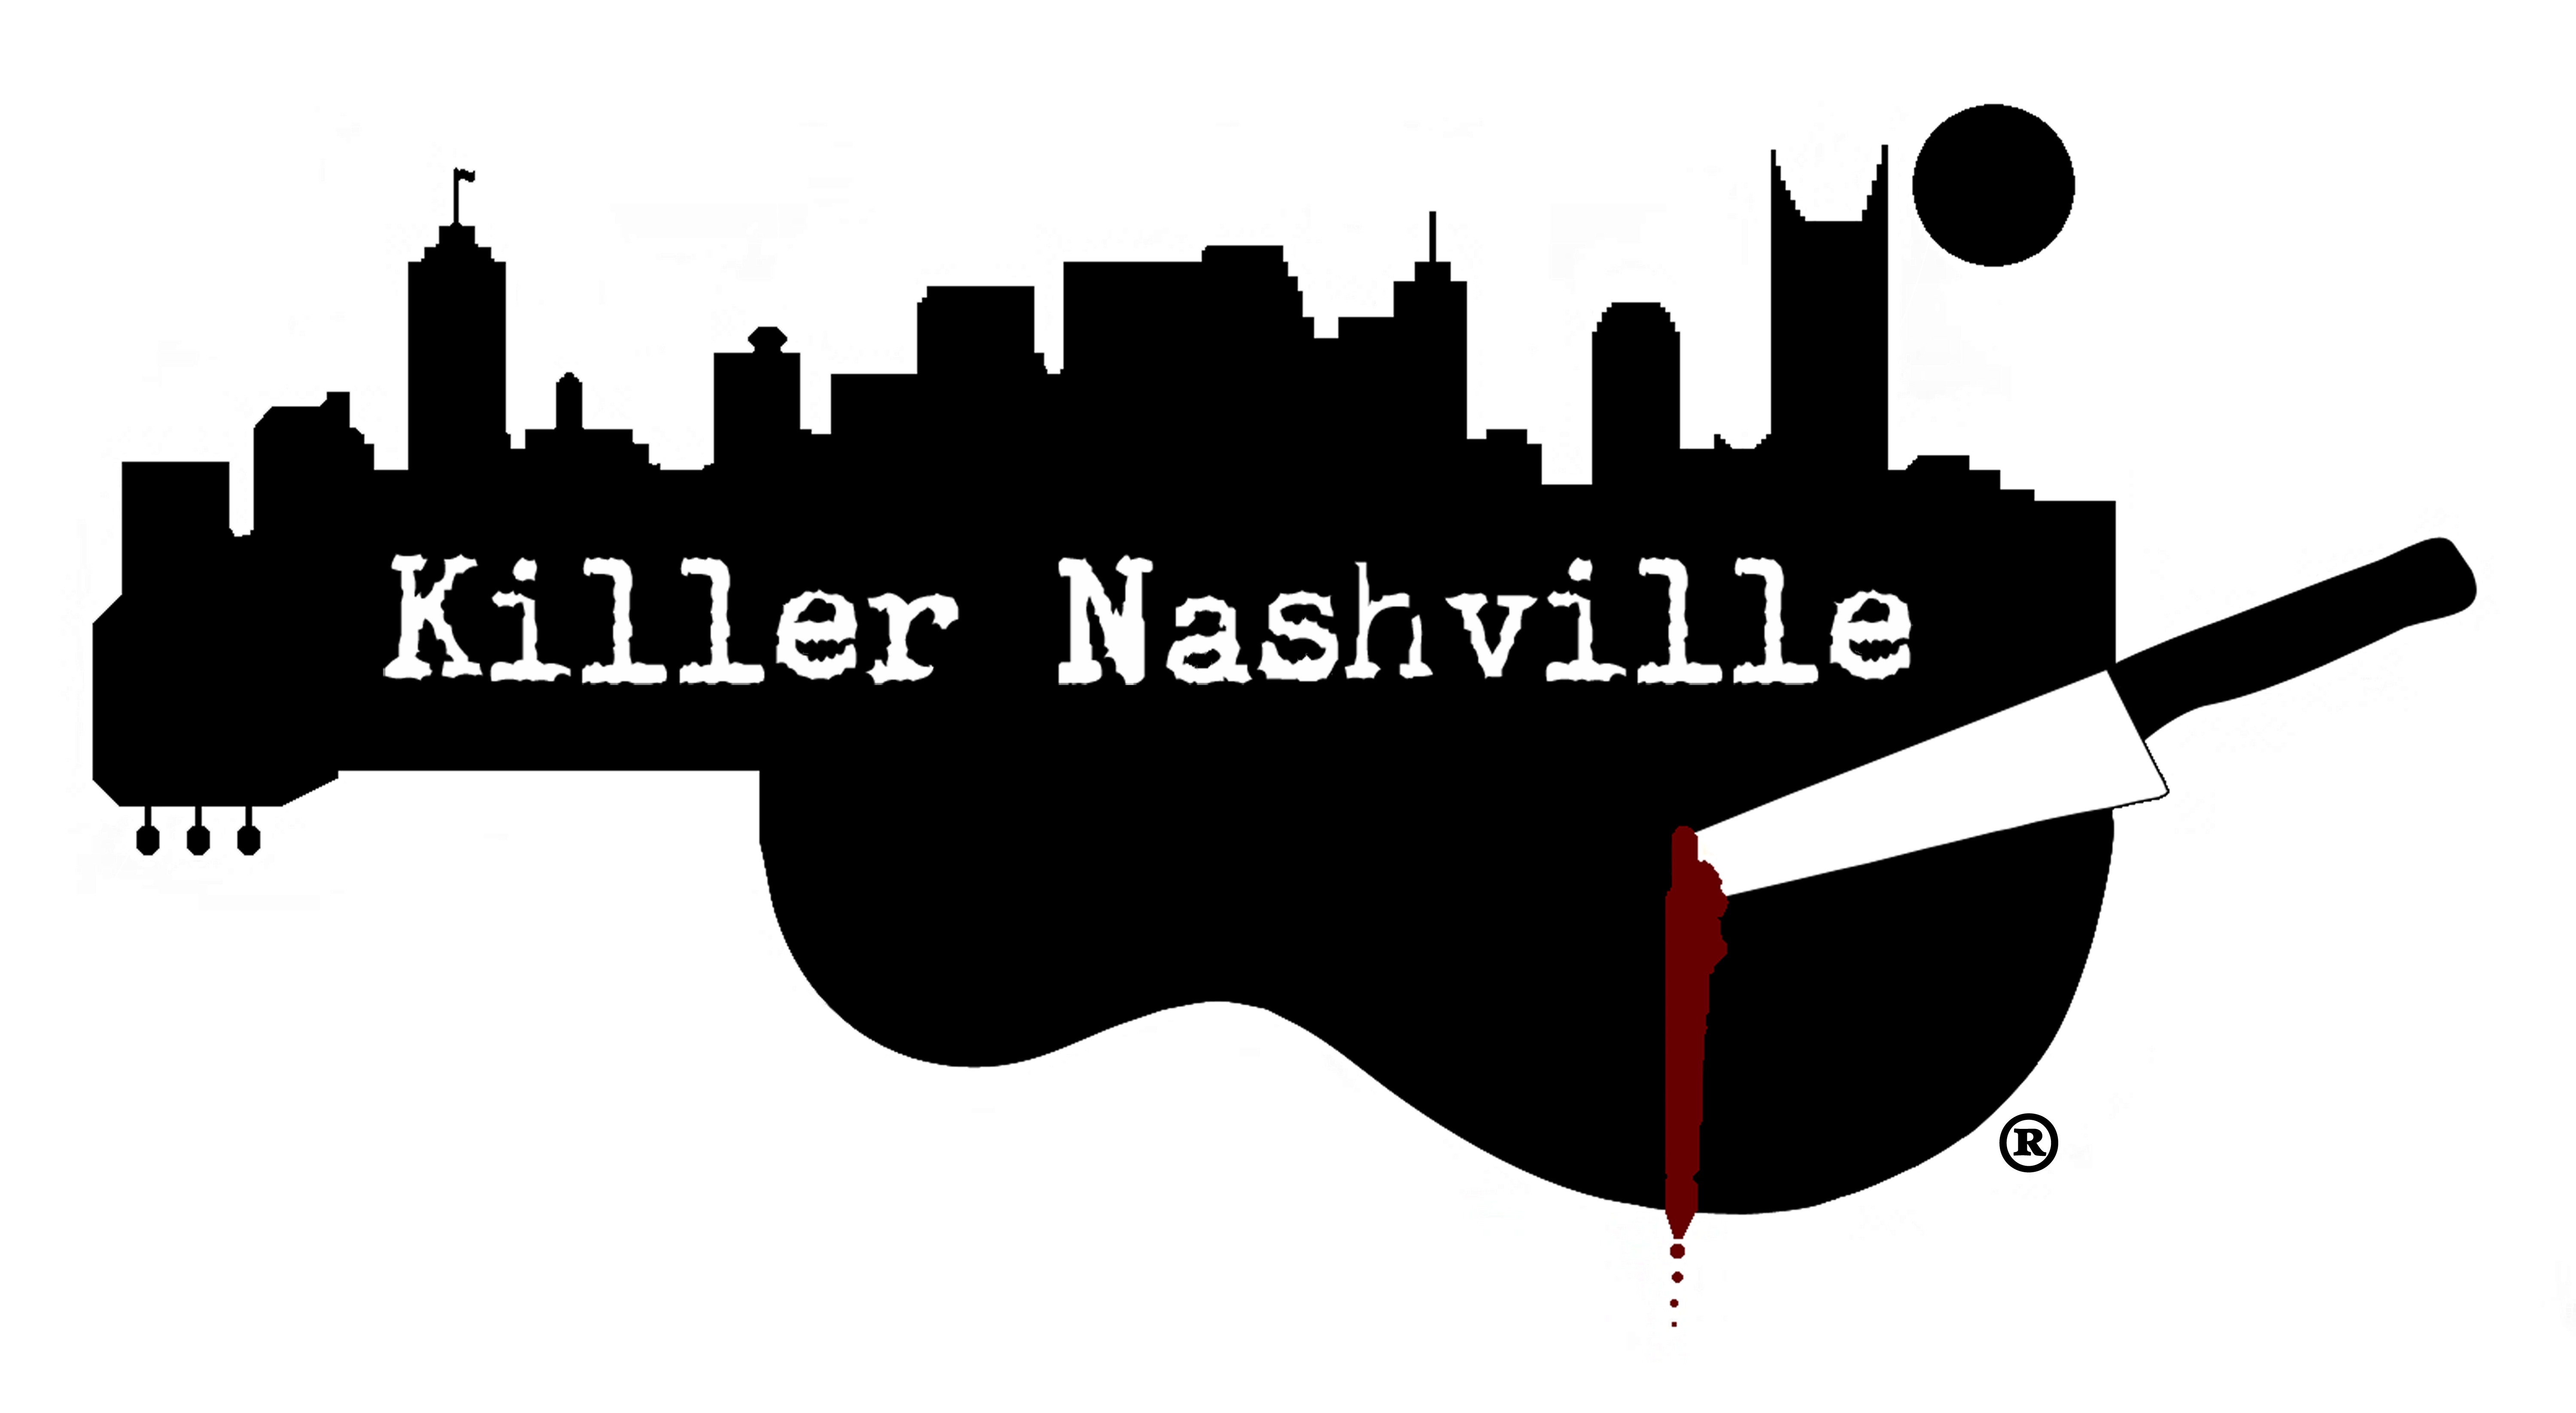 The Killer Nashville International Writers' Conference - Killer Nashville Clipart (6000x3292), Png Download